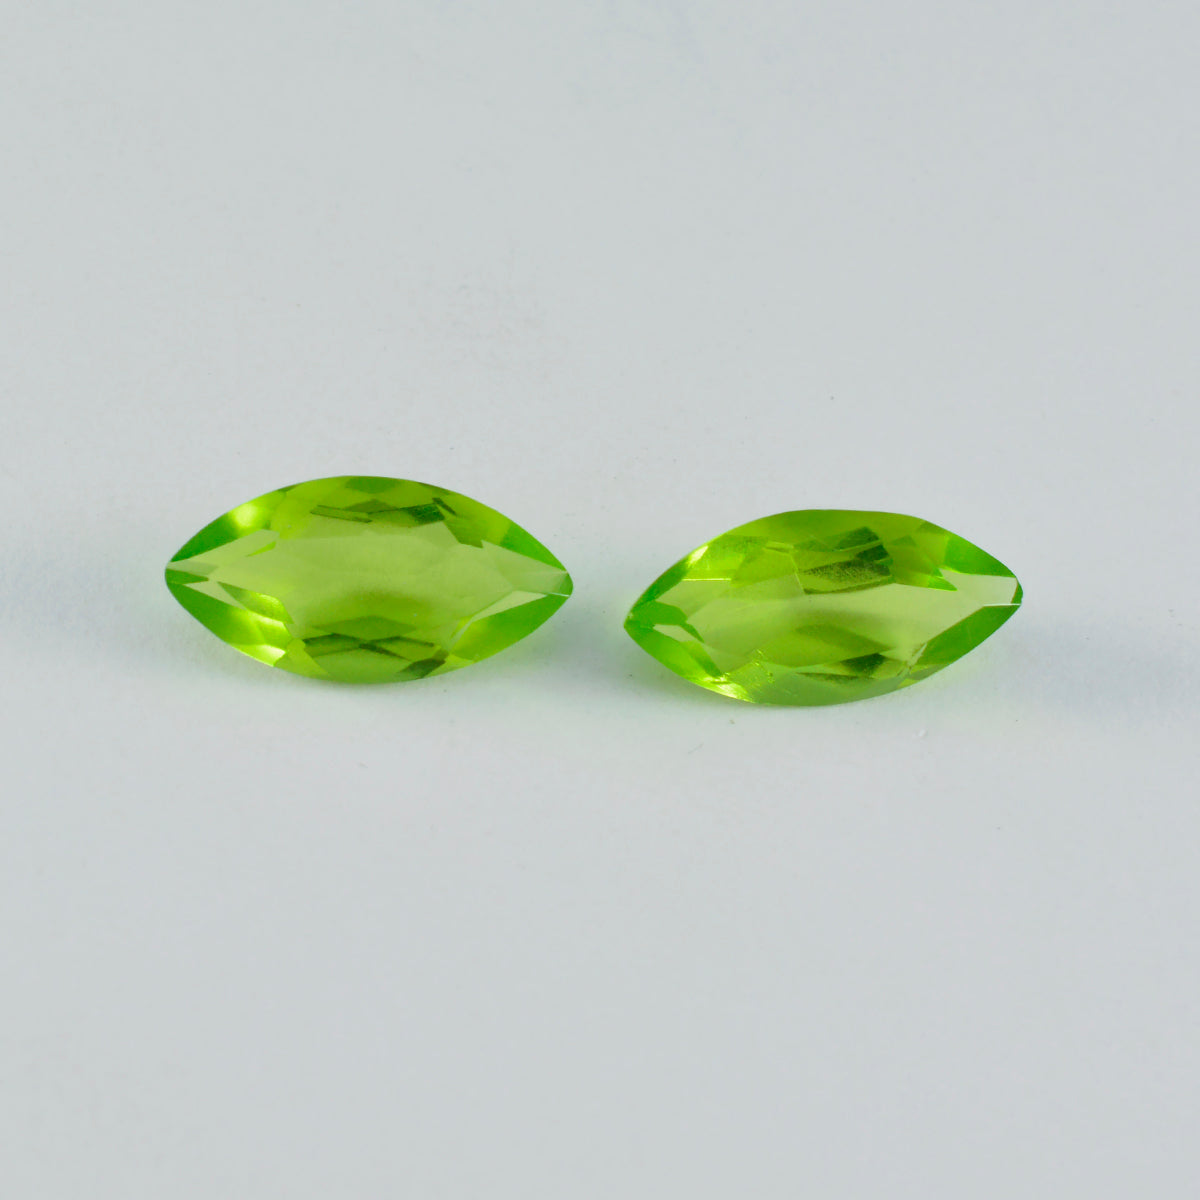 riyogems 1шт зеленый перидот cz граненый 10x20 мм форма маркиза красивый качественный камень